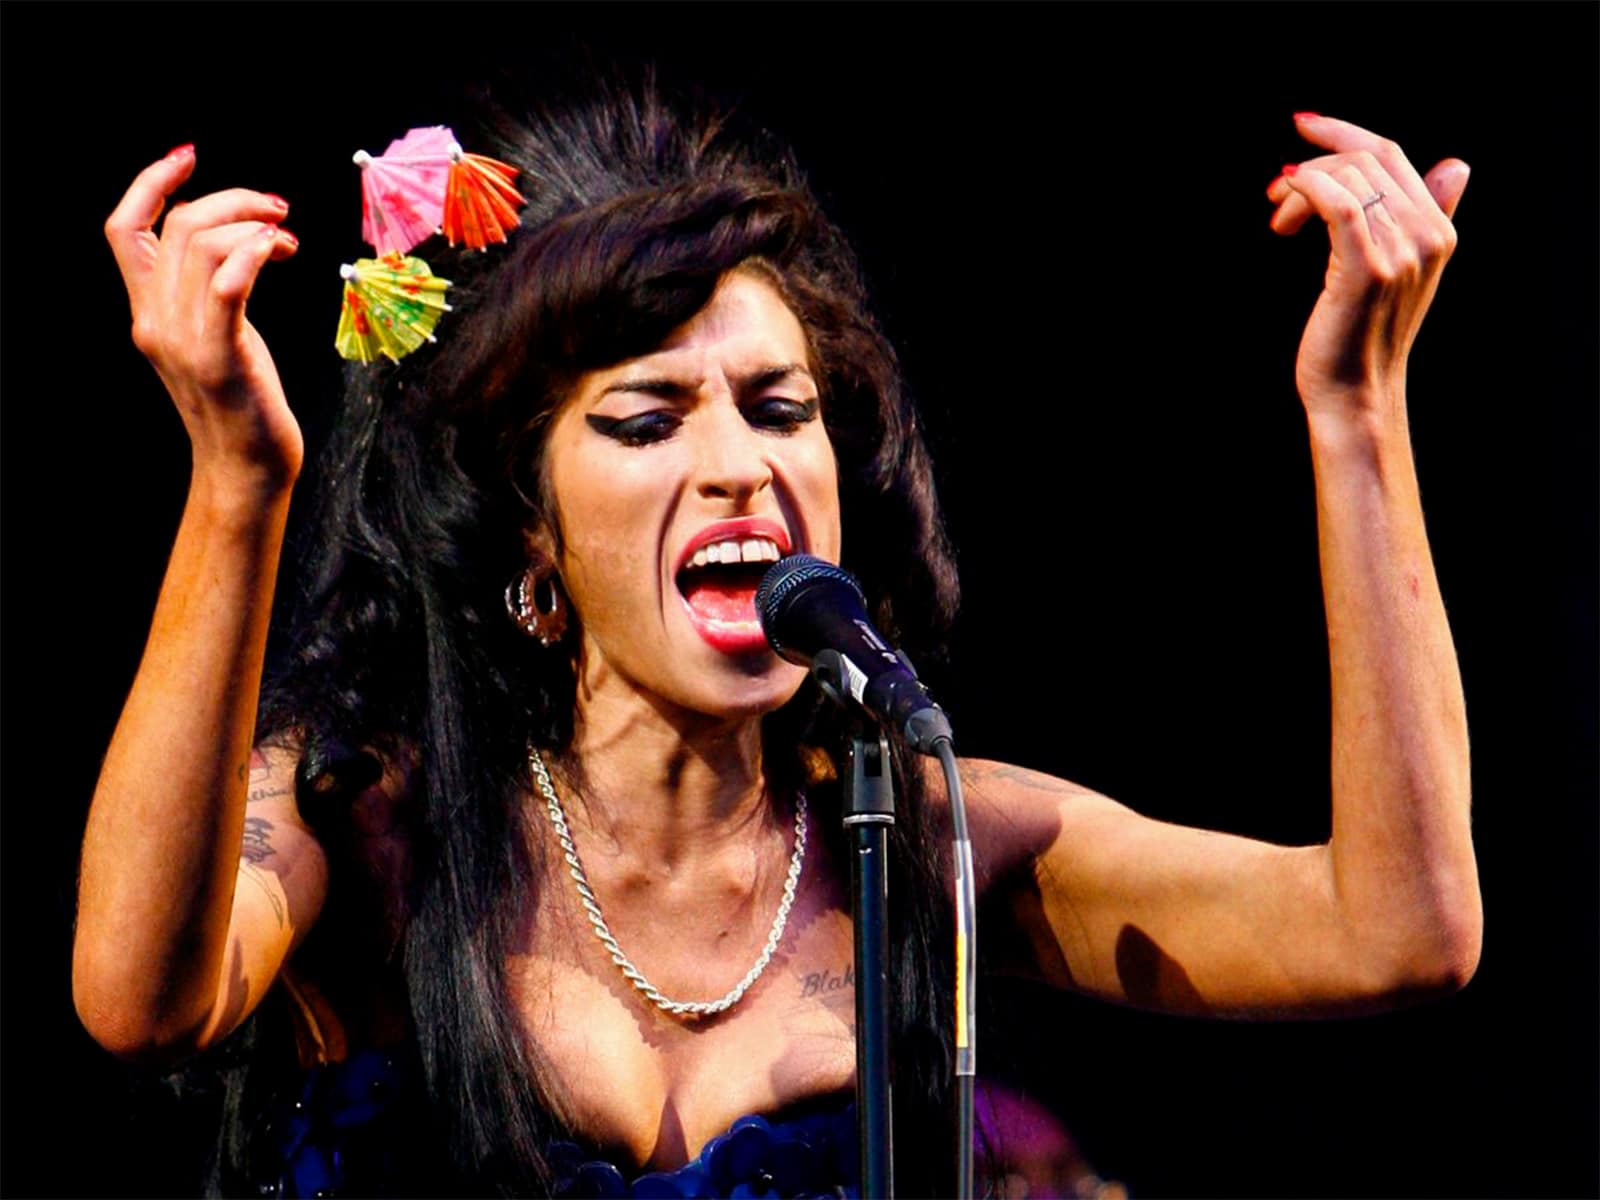 El set list que tocó Amy Winehouse en Glastonbury 2007 ahora en vinilo